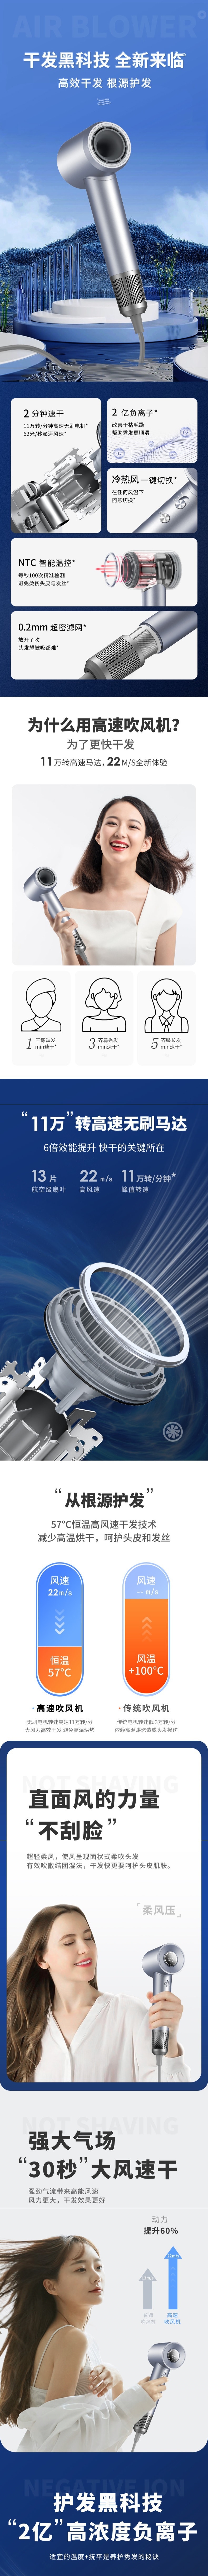 【中国直邮】高速吹风机电吹风 2亿负离子 无刷电机 恒温护发 数字显示 110V 白色